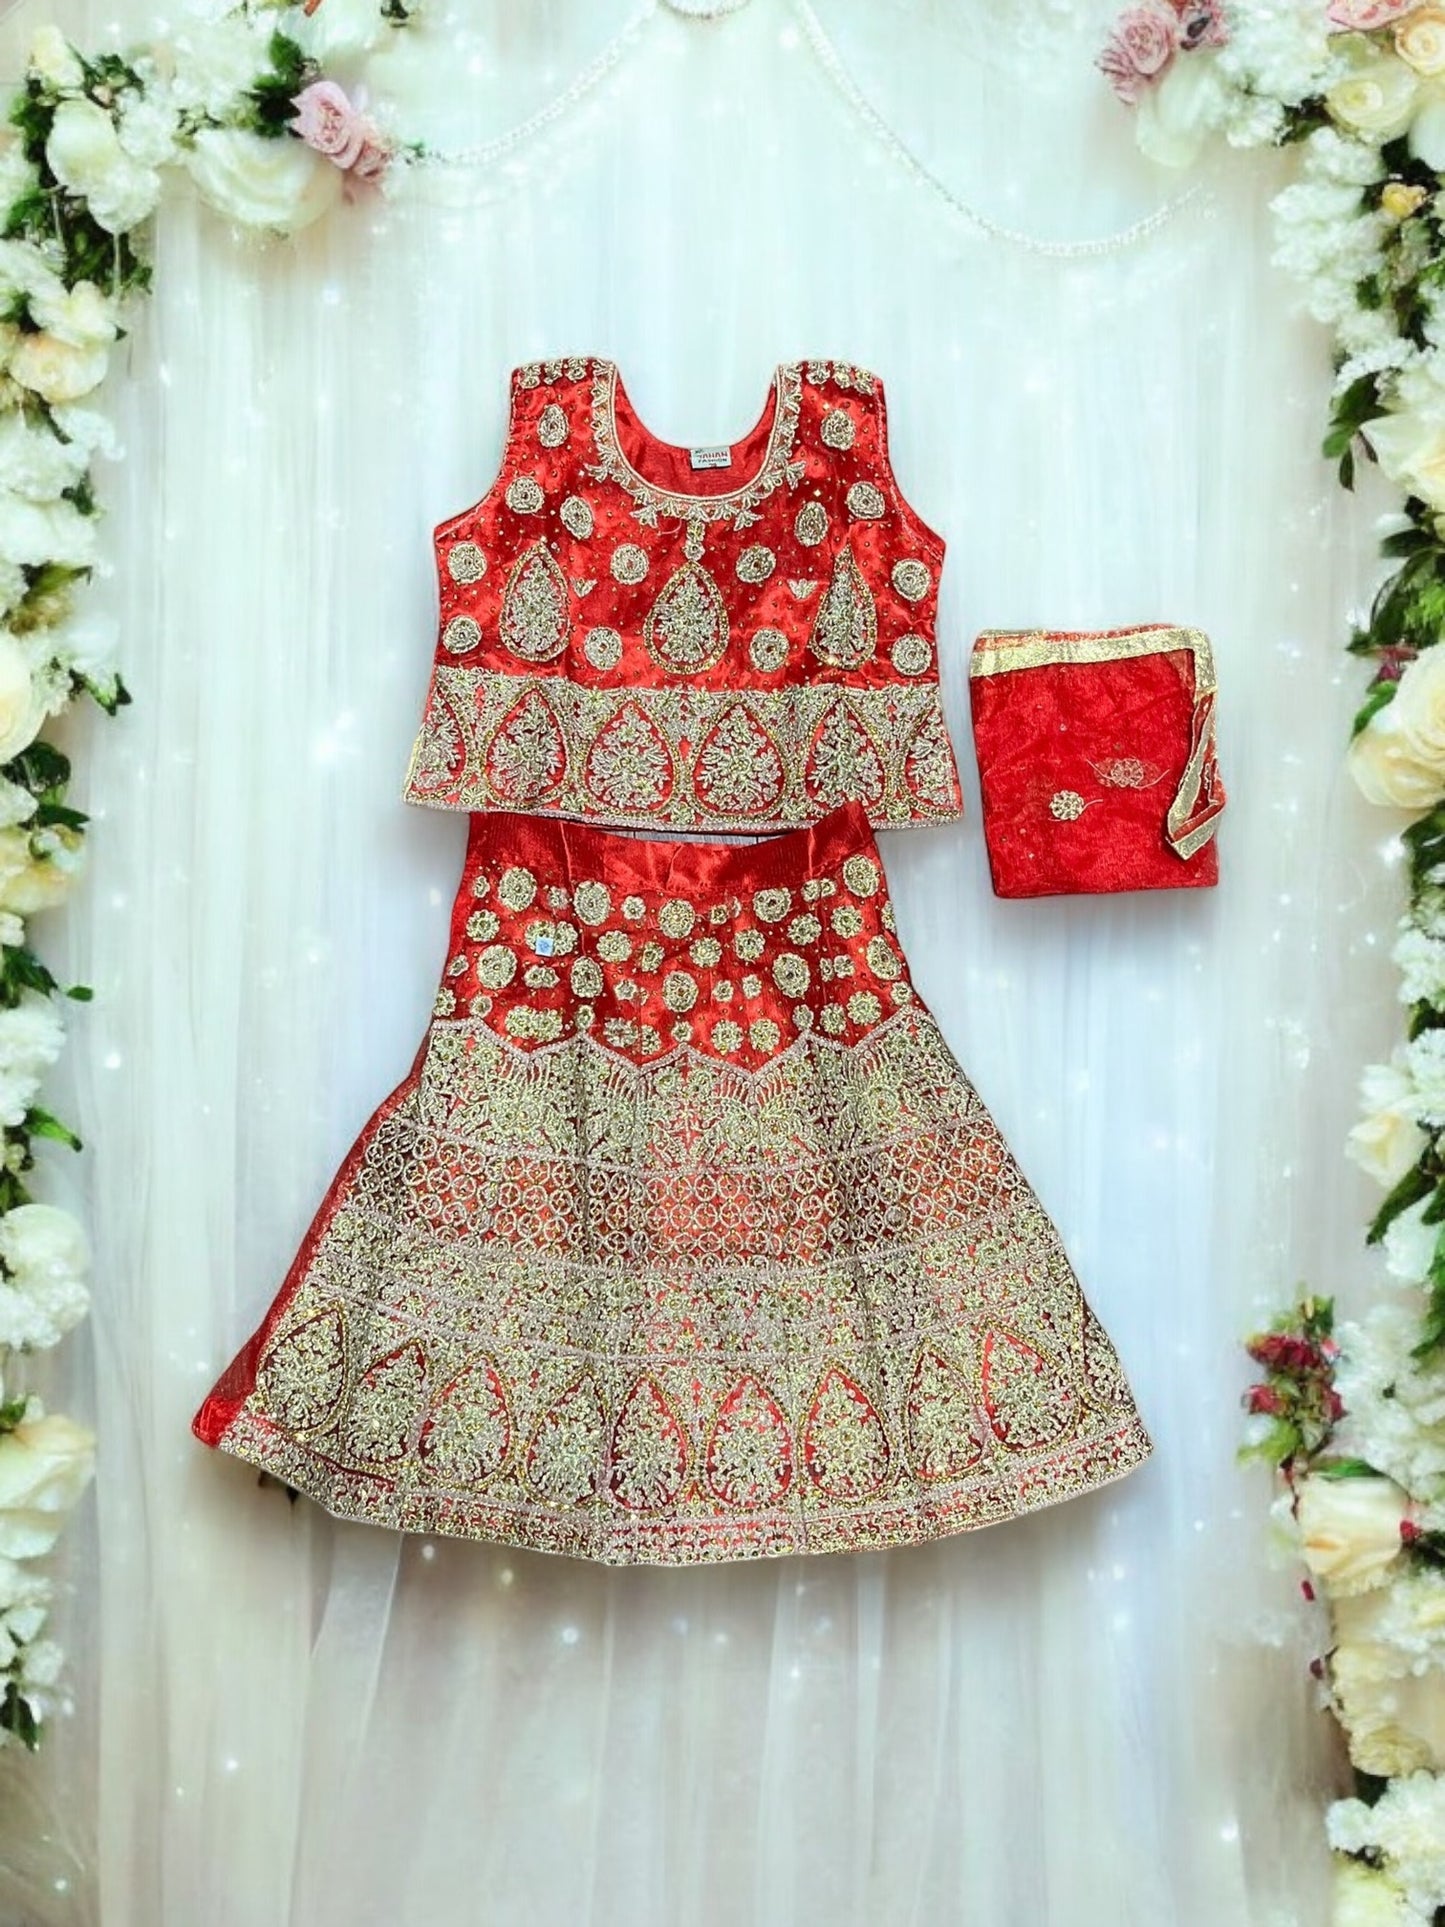 Elegant Grace: Girls Lehenga Choli with Embroidery